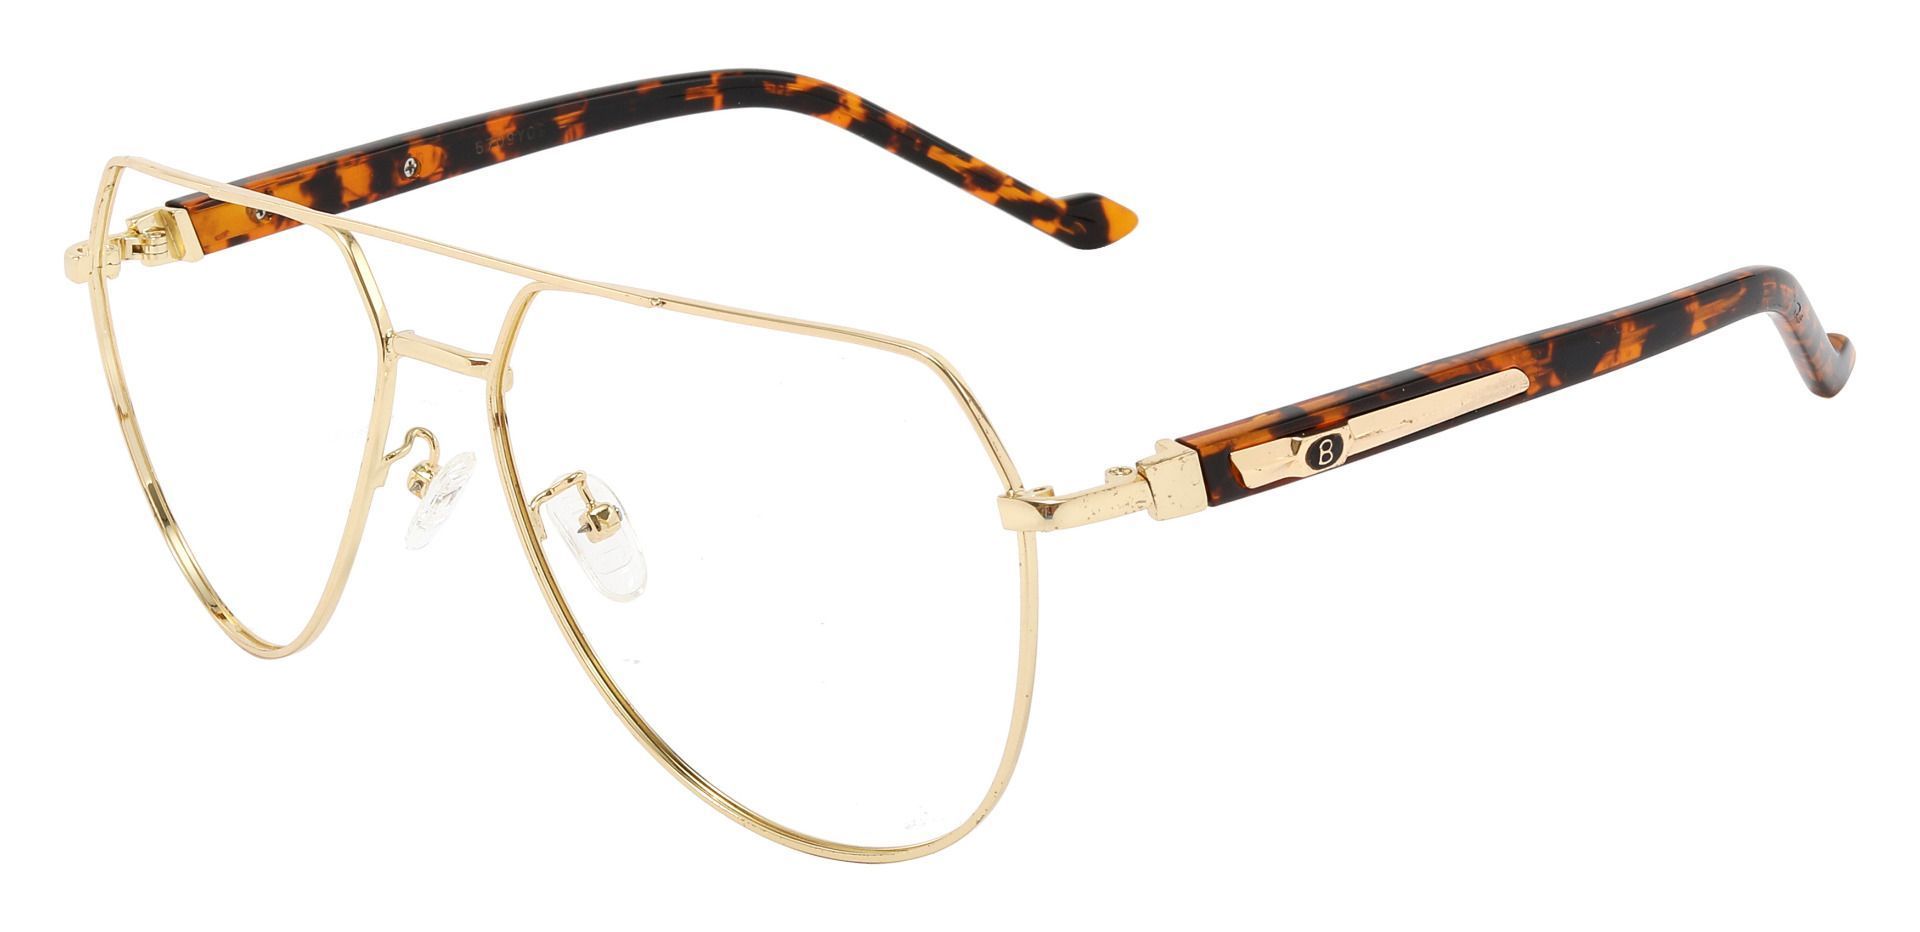 Wright Aviator Single Vision Glasses - Gold | Men's Eyeglasses | Payne ...